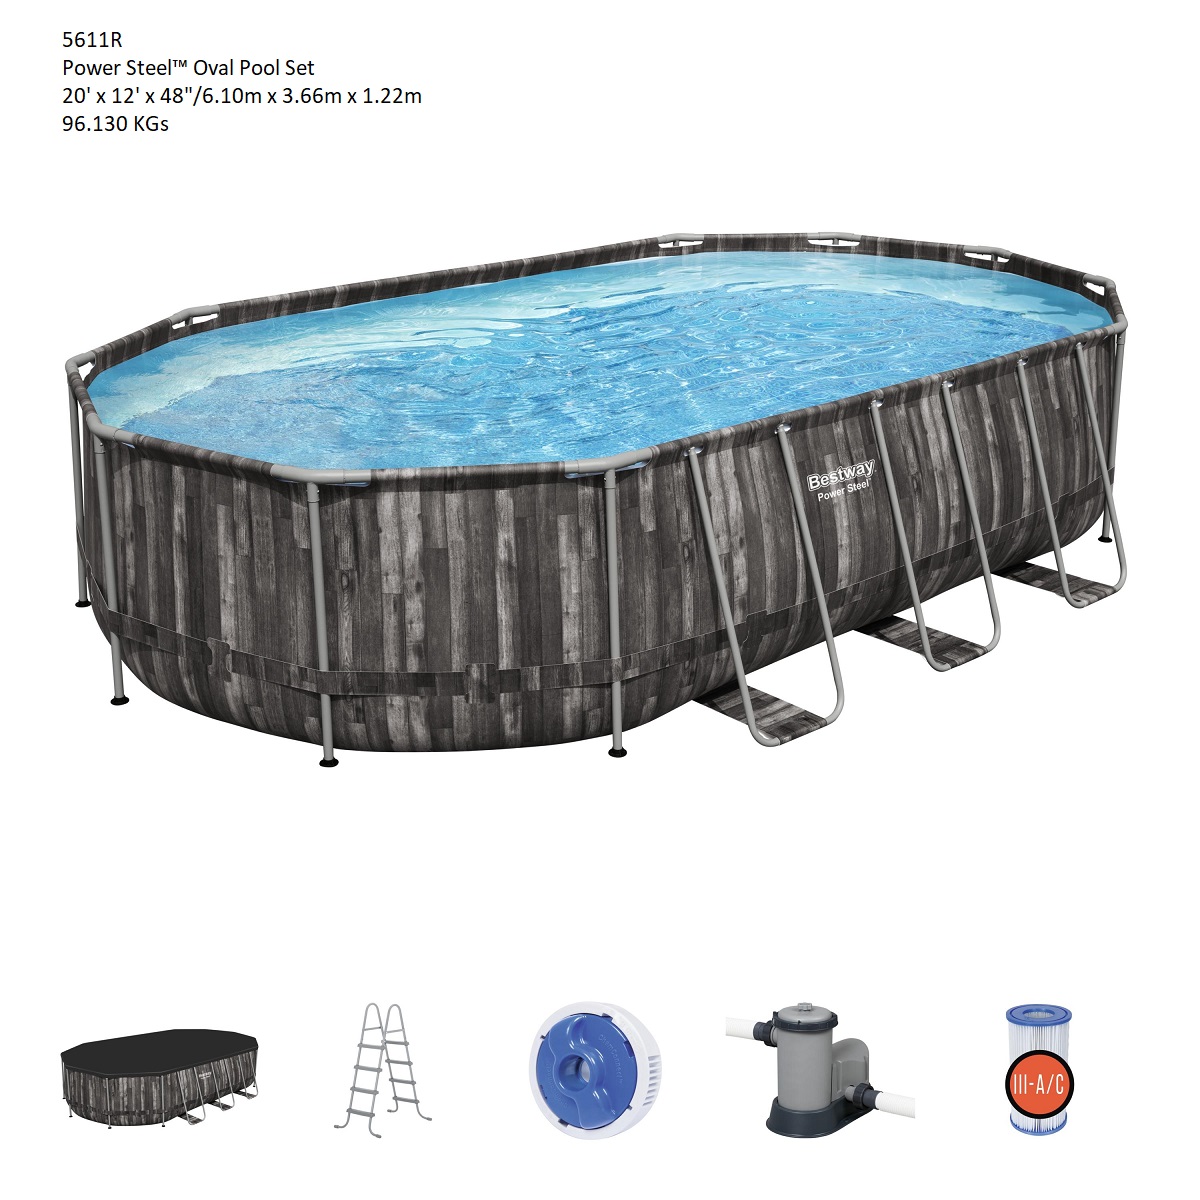 Power Steel elliptical swimming pool from Bestway